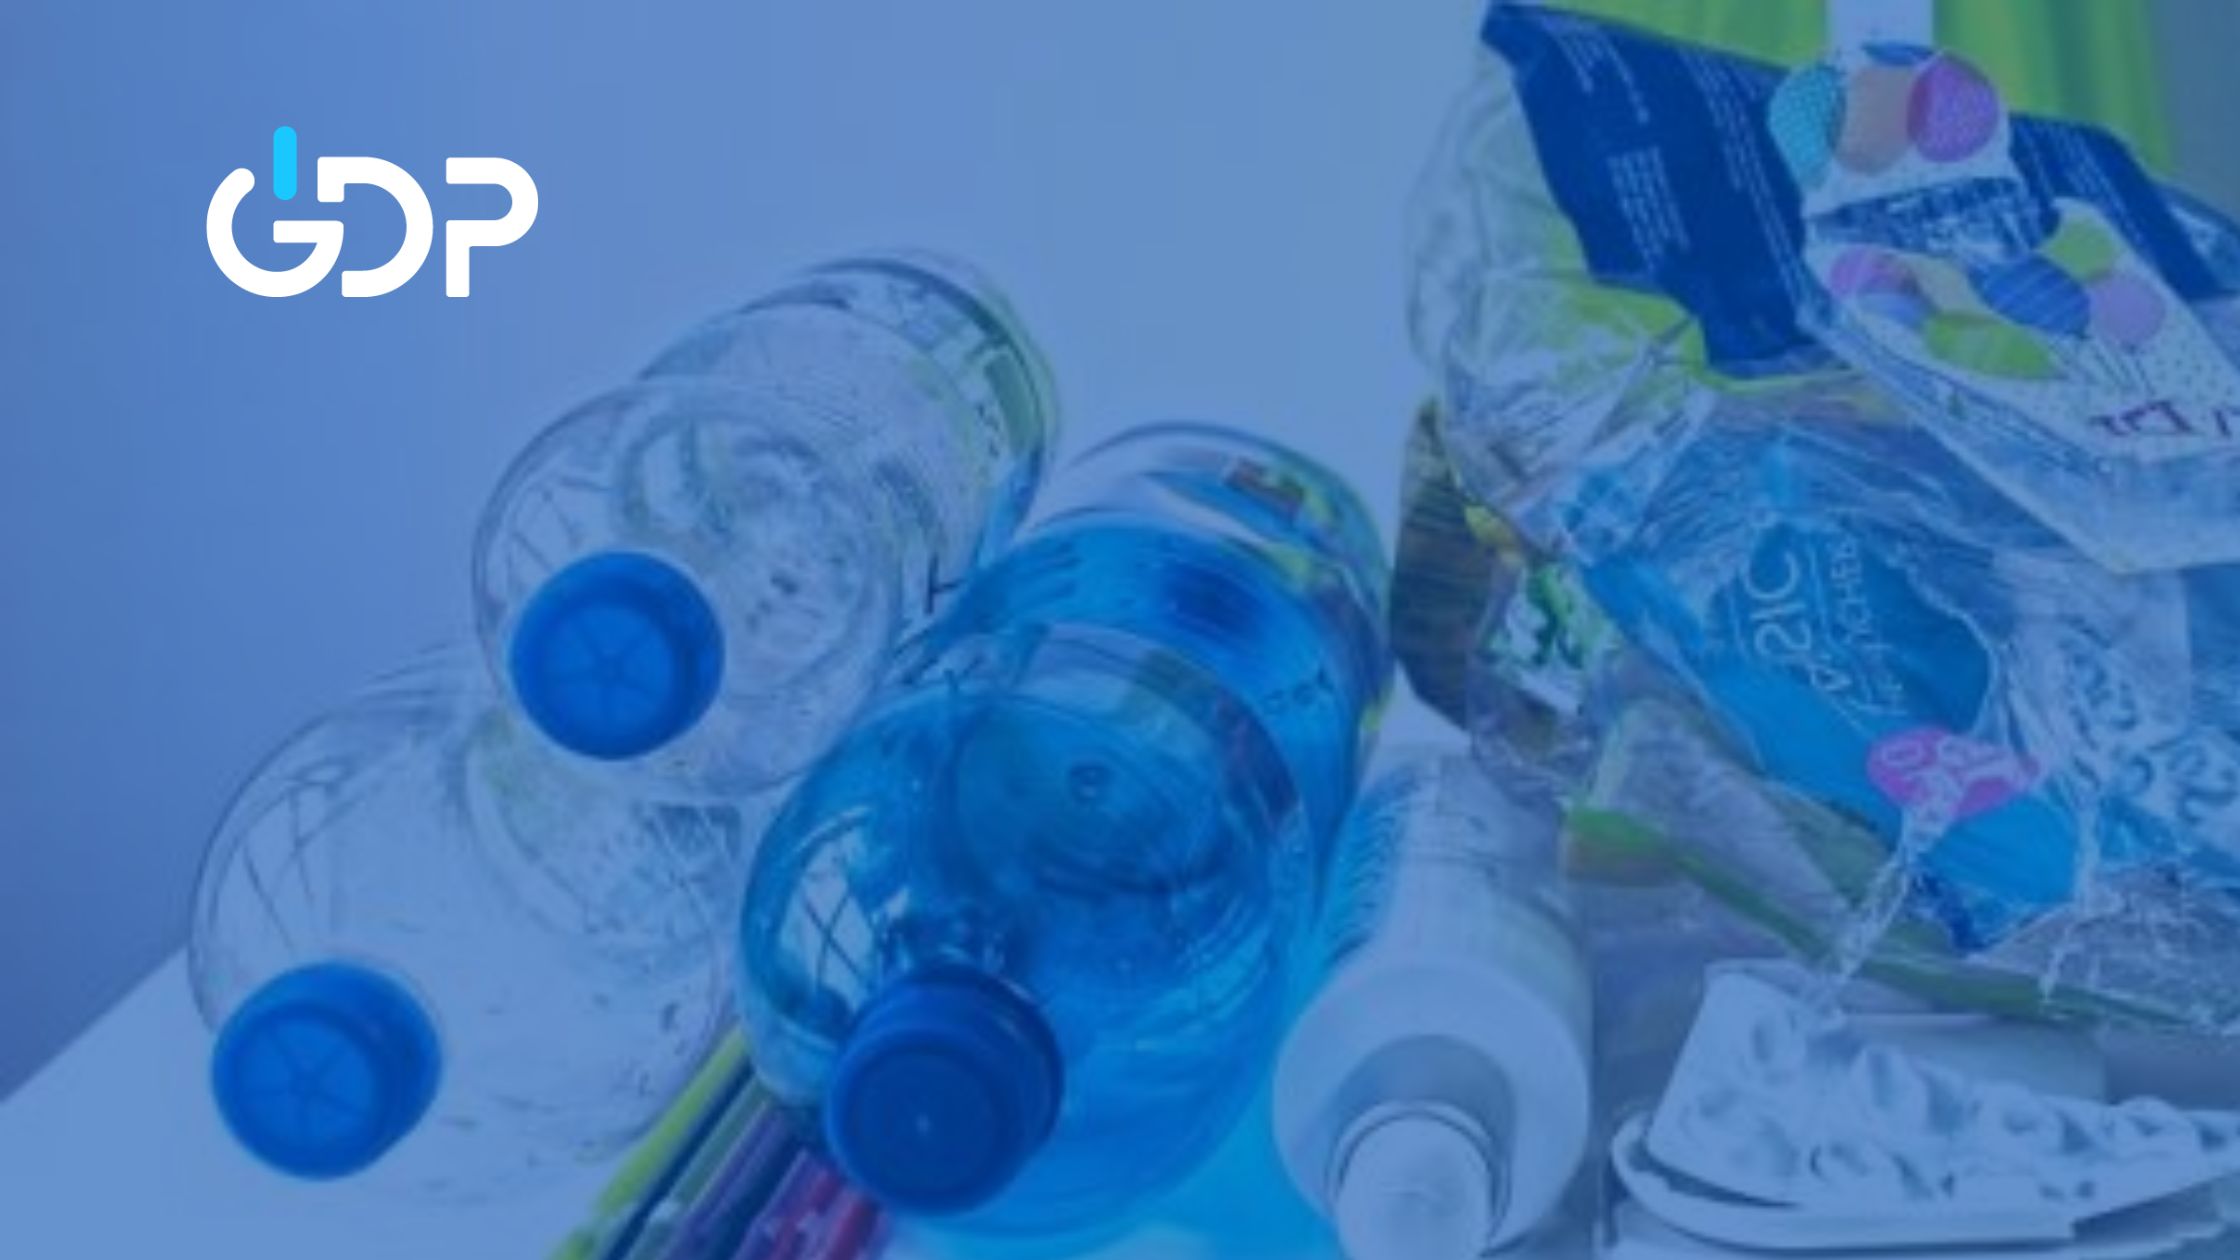 Impost especial sobre els envasos de plàstic no reutilitzables